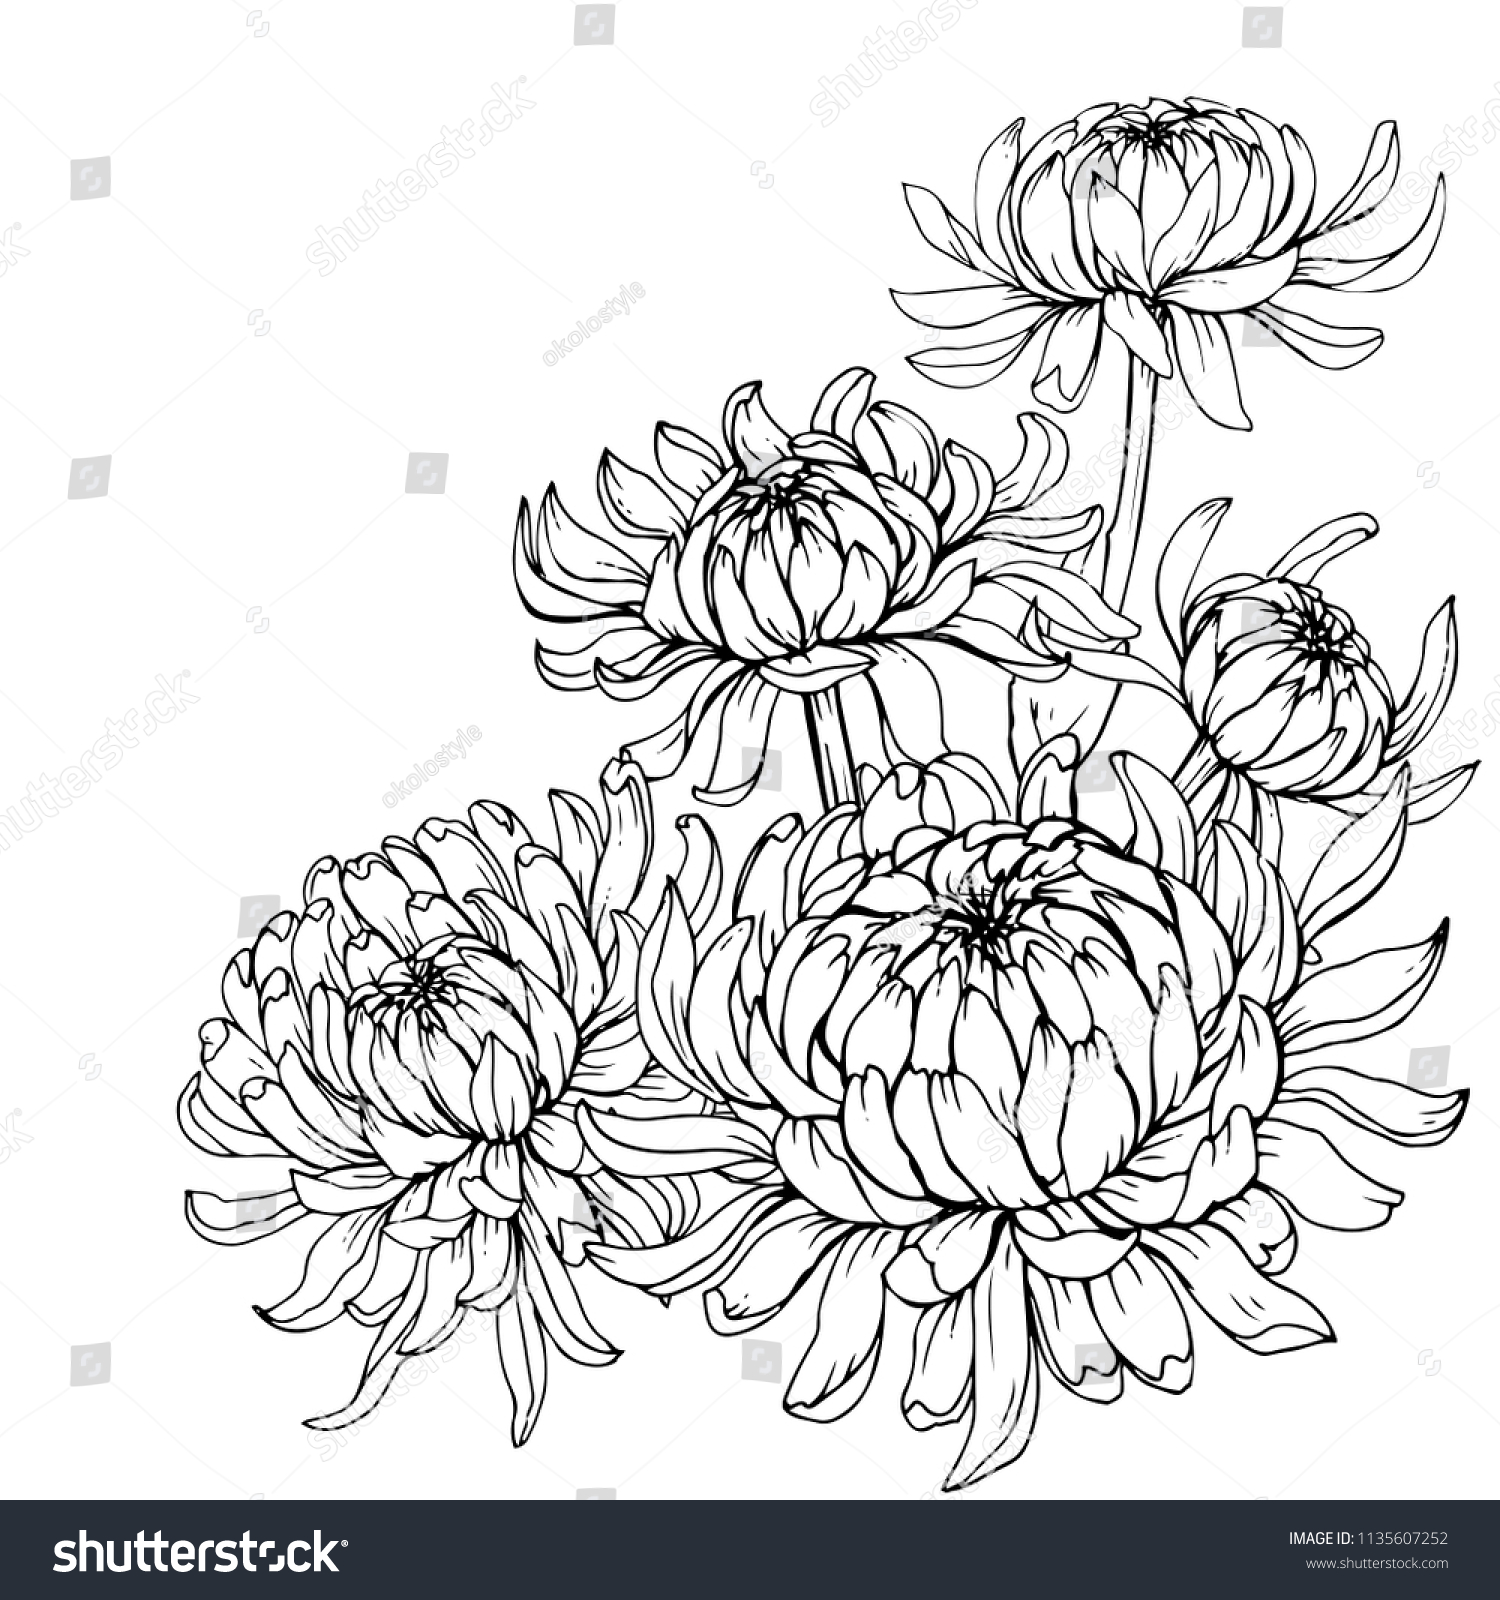 Бутон хризантемы рисунок